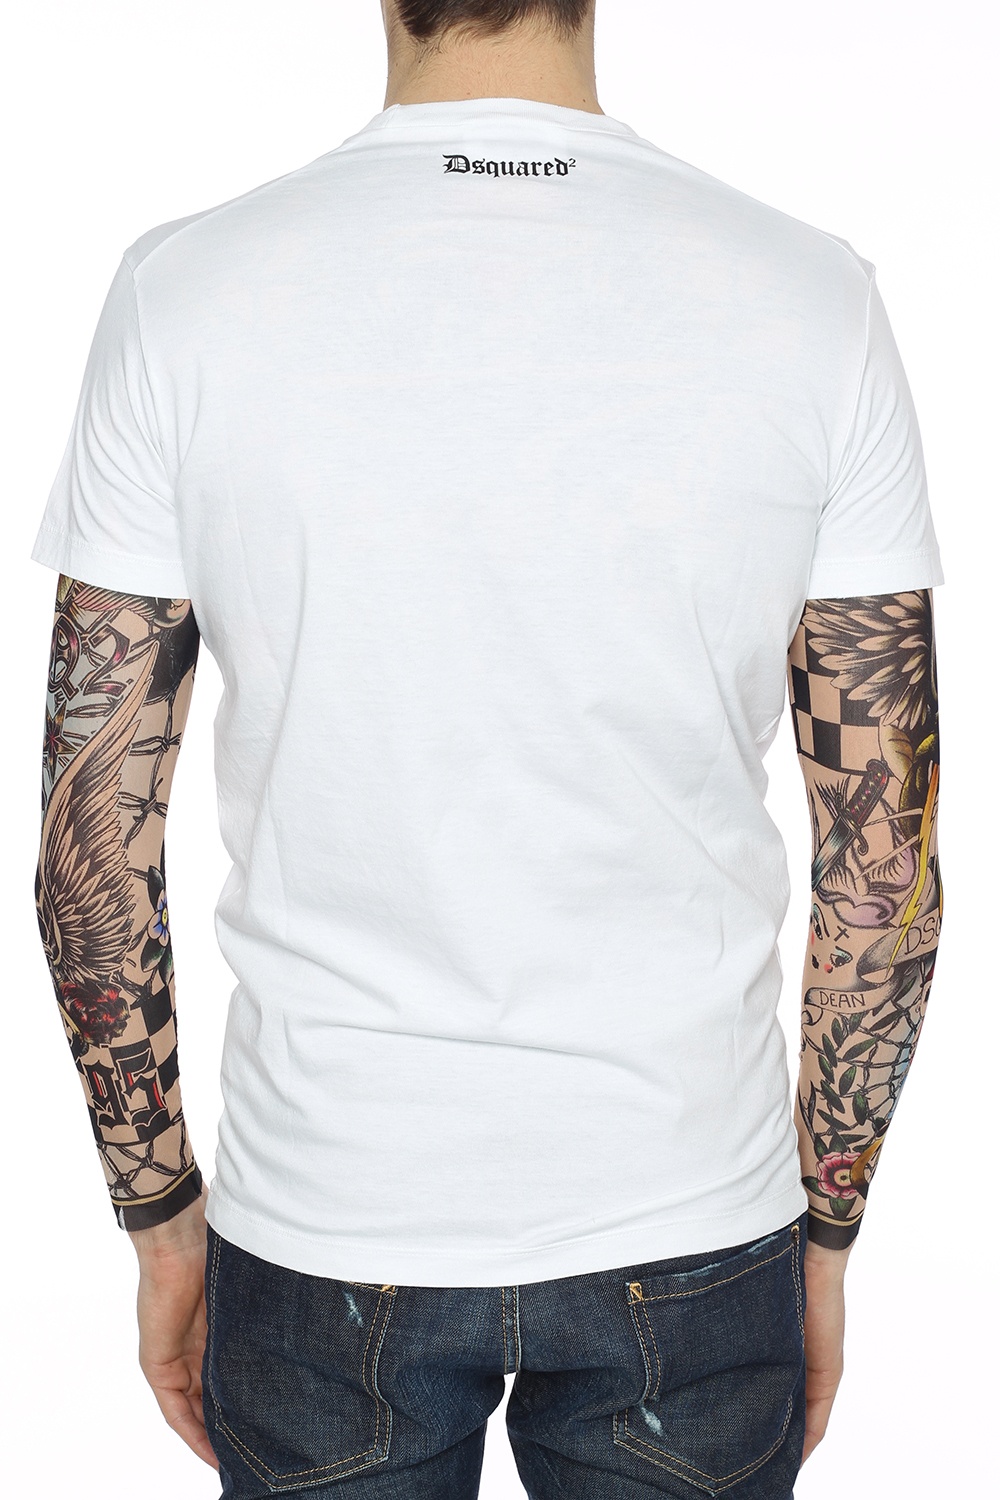 dsquared2 tattoo t-shirt